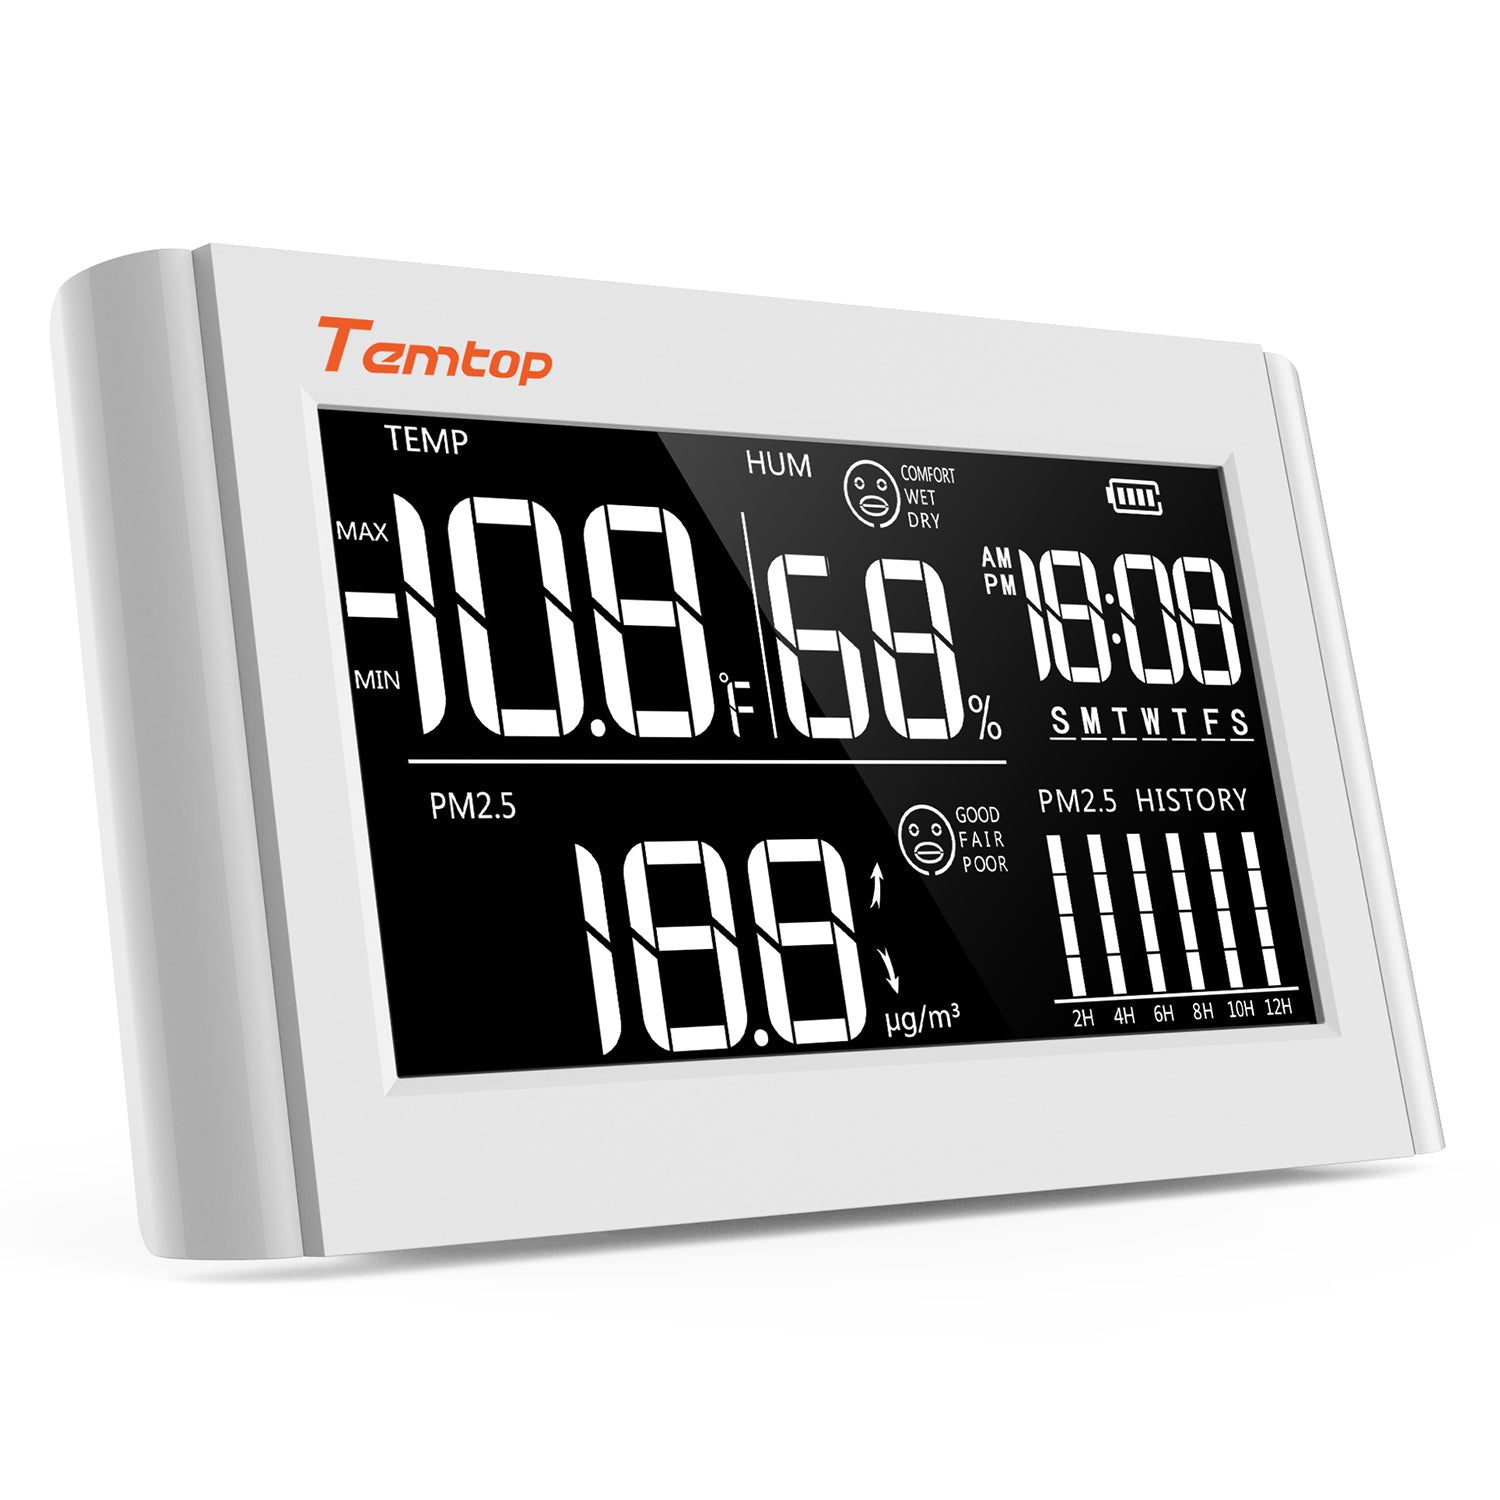 Temtop P20 PM2.5 Moniteur de qualité de l'air, détecteur de particules laser professionnel, affichage de la température et de l'humidité en temps réel, batterie rechargeable